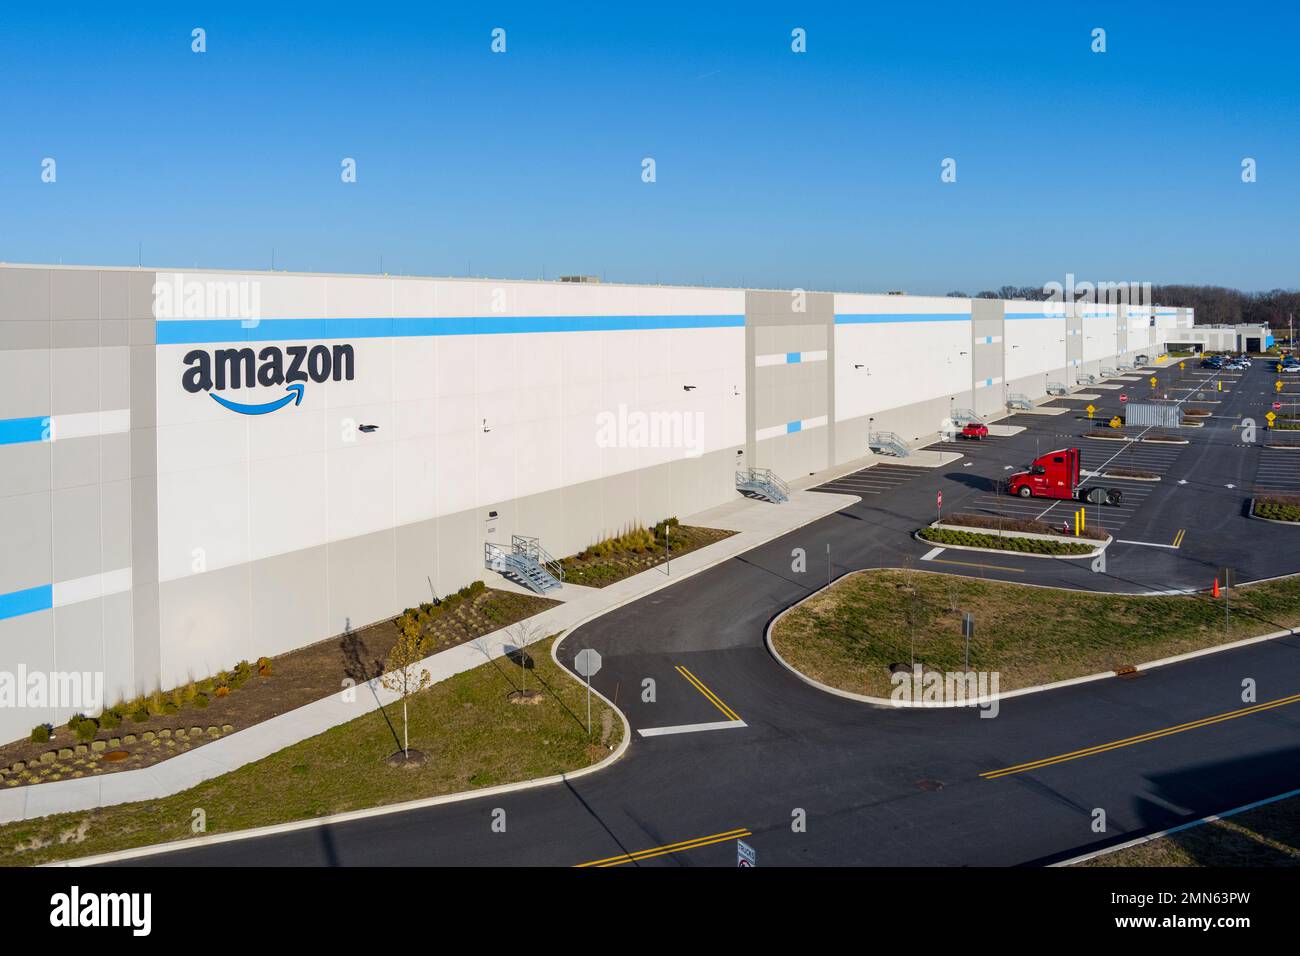 Photographie aérienne du logo Amazon sur le côté de l'entrepôt, Pennsylvanie, États-Unis Banque D'Images